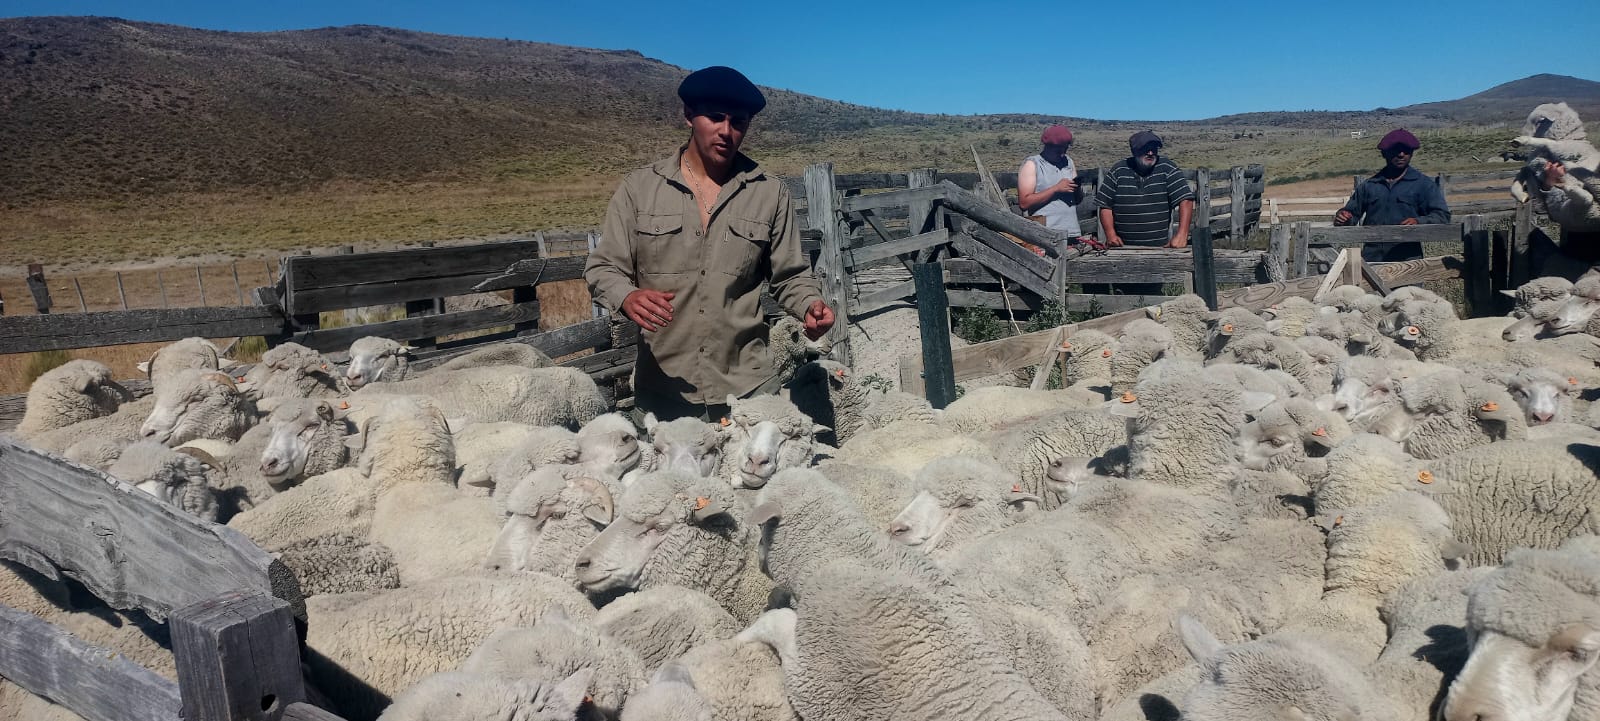 Las ovejas de refugo son criadas de forma natural y alimentadas con una dieta vegetal. Foto: gentileza